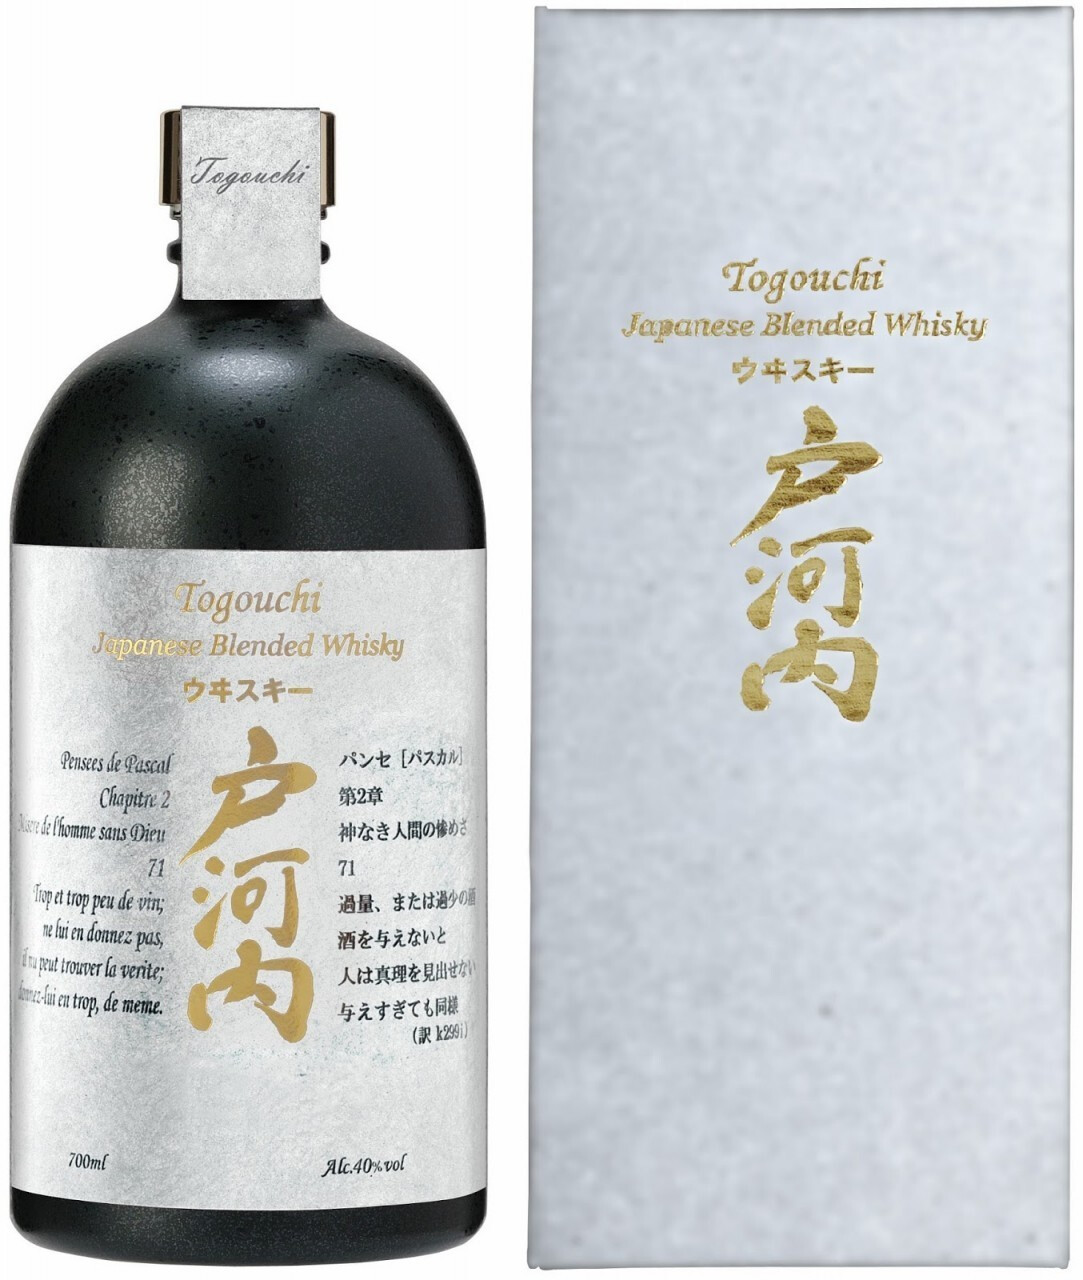 TOGOUCHI Whisky japonais blended malt 40% avec étui 70cl pas cher 